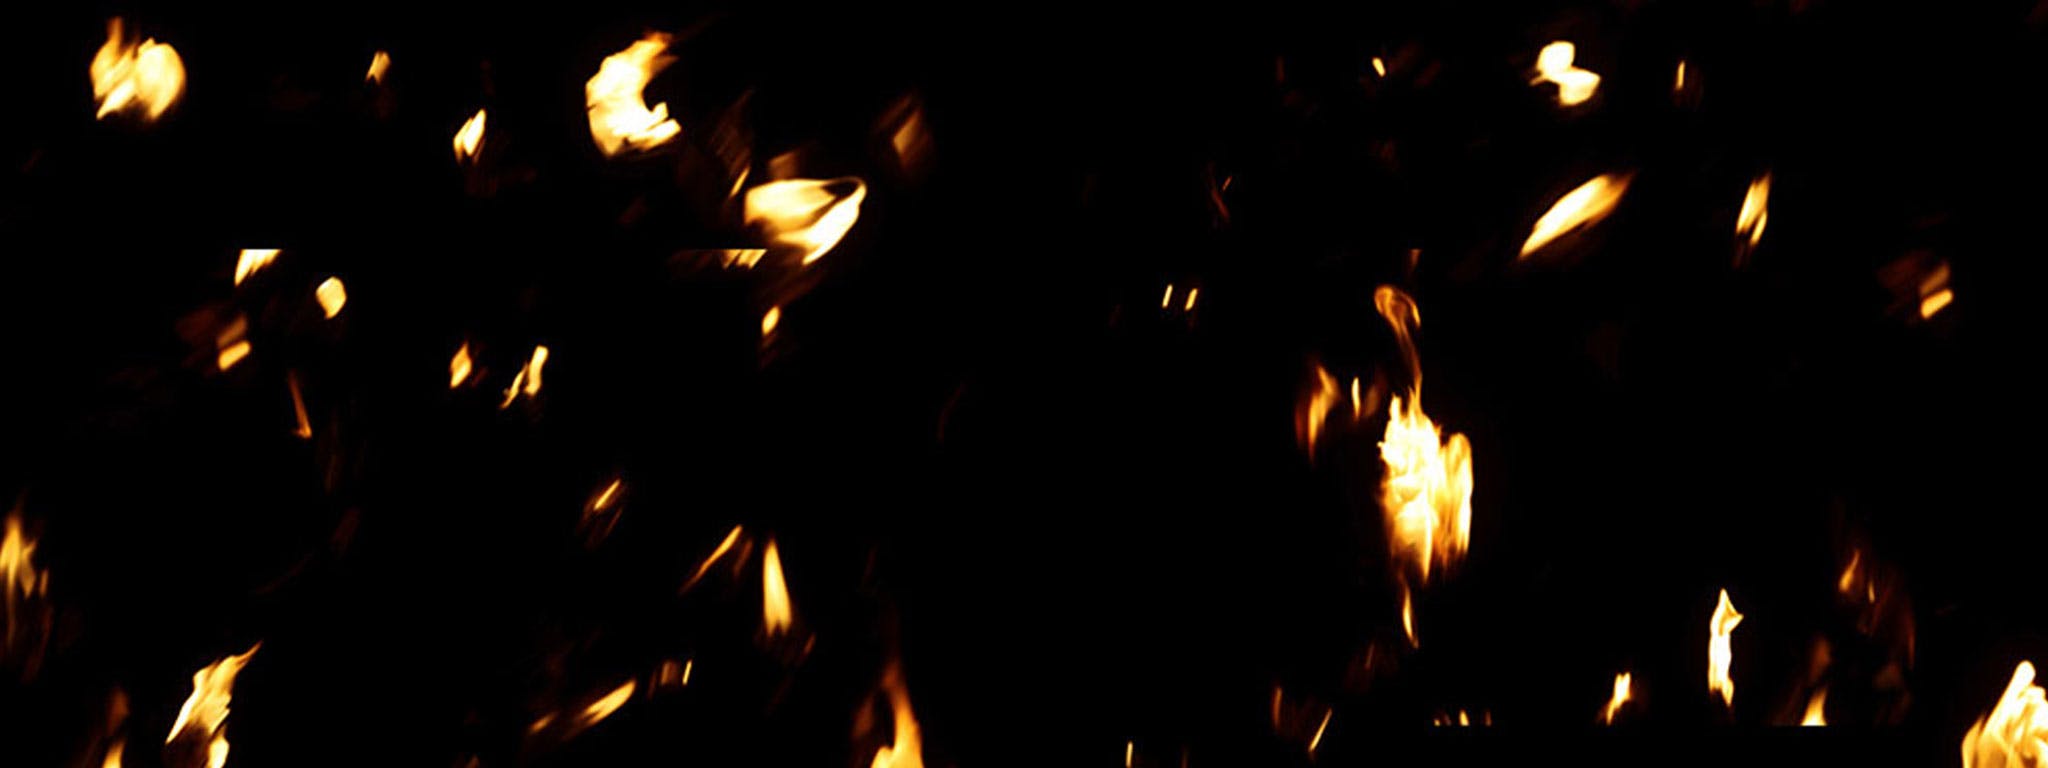 8k Falling Fire Debris VFX Stock Footage